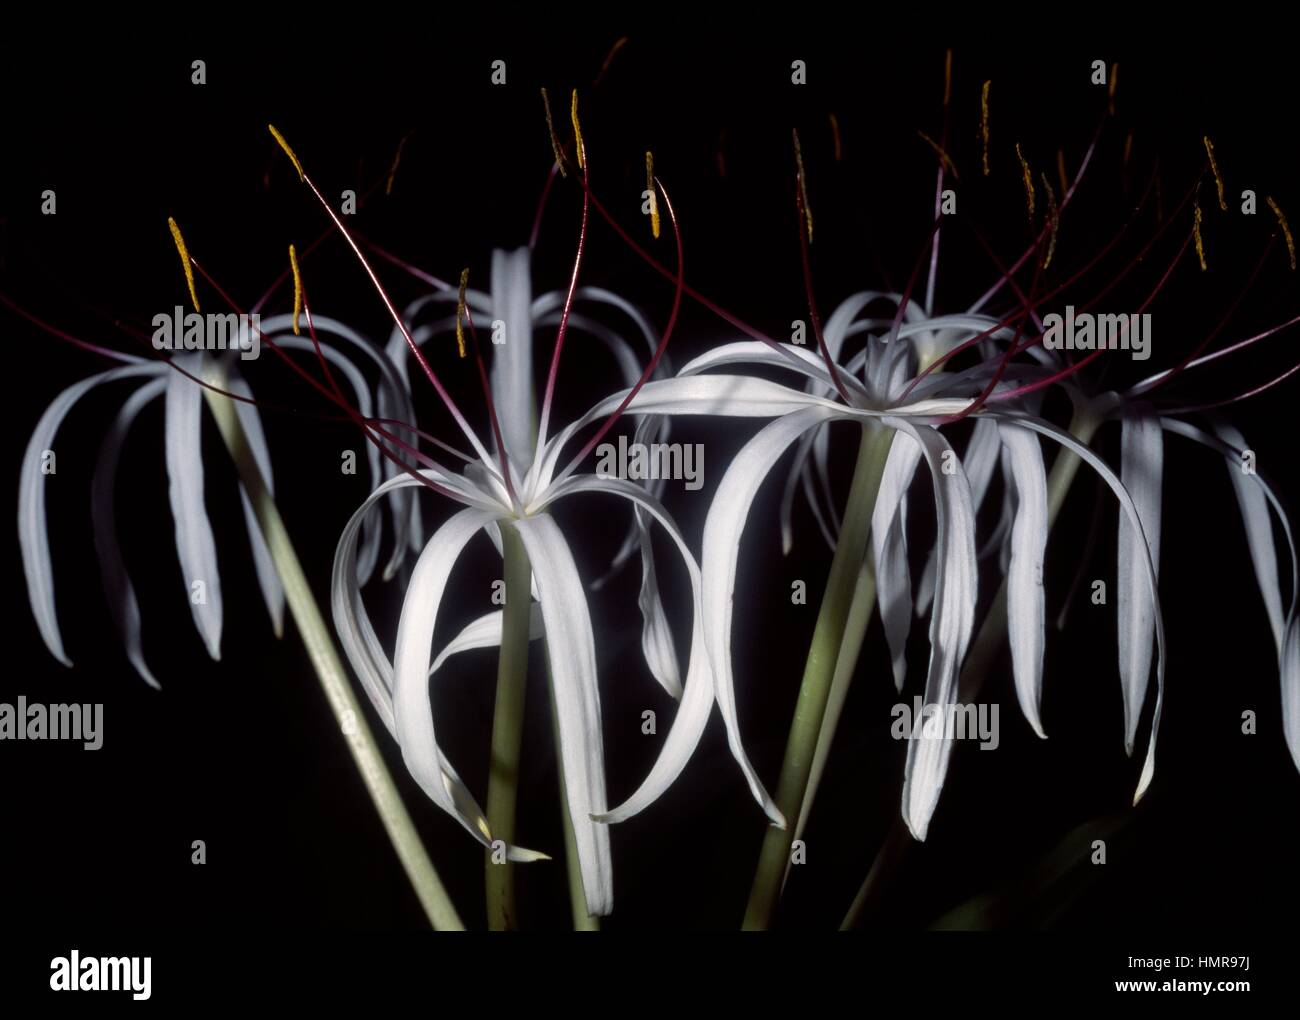 Swamplily (Crinum hildebrandtii), Amaryllidaceae. Stock Photo